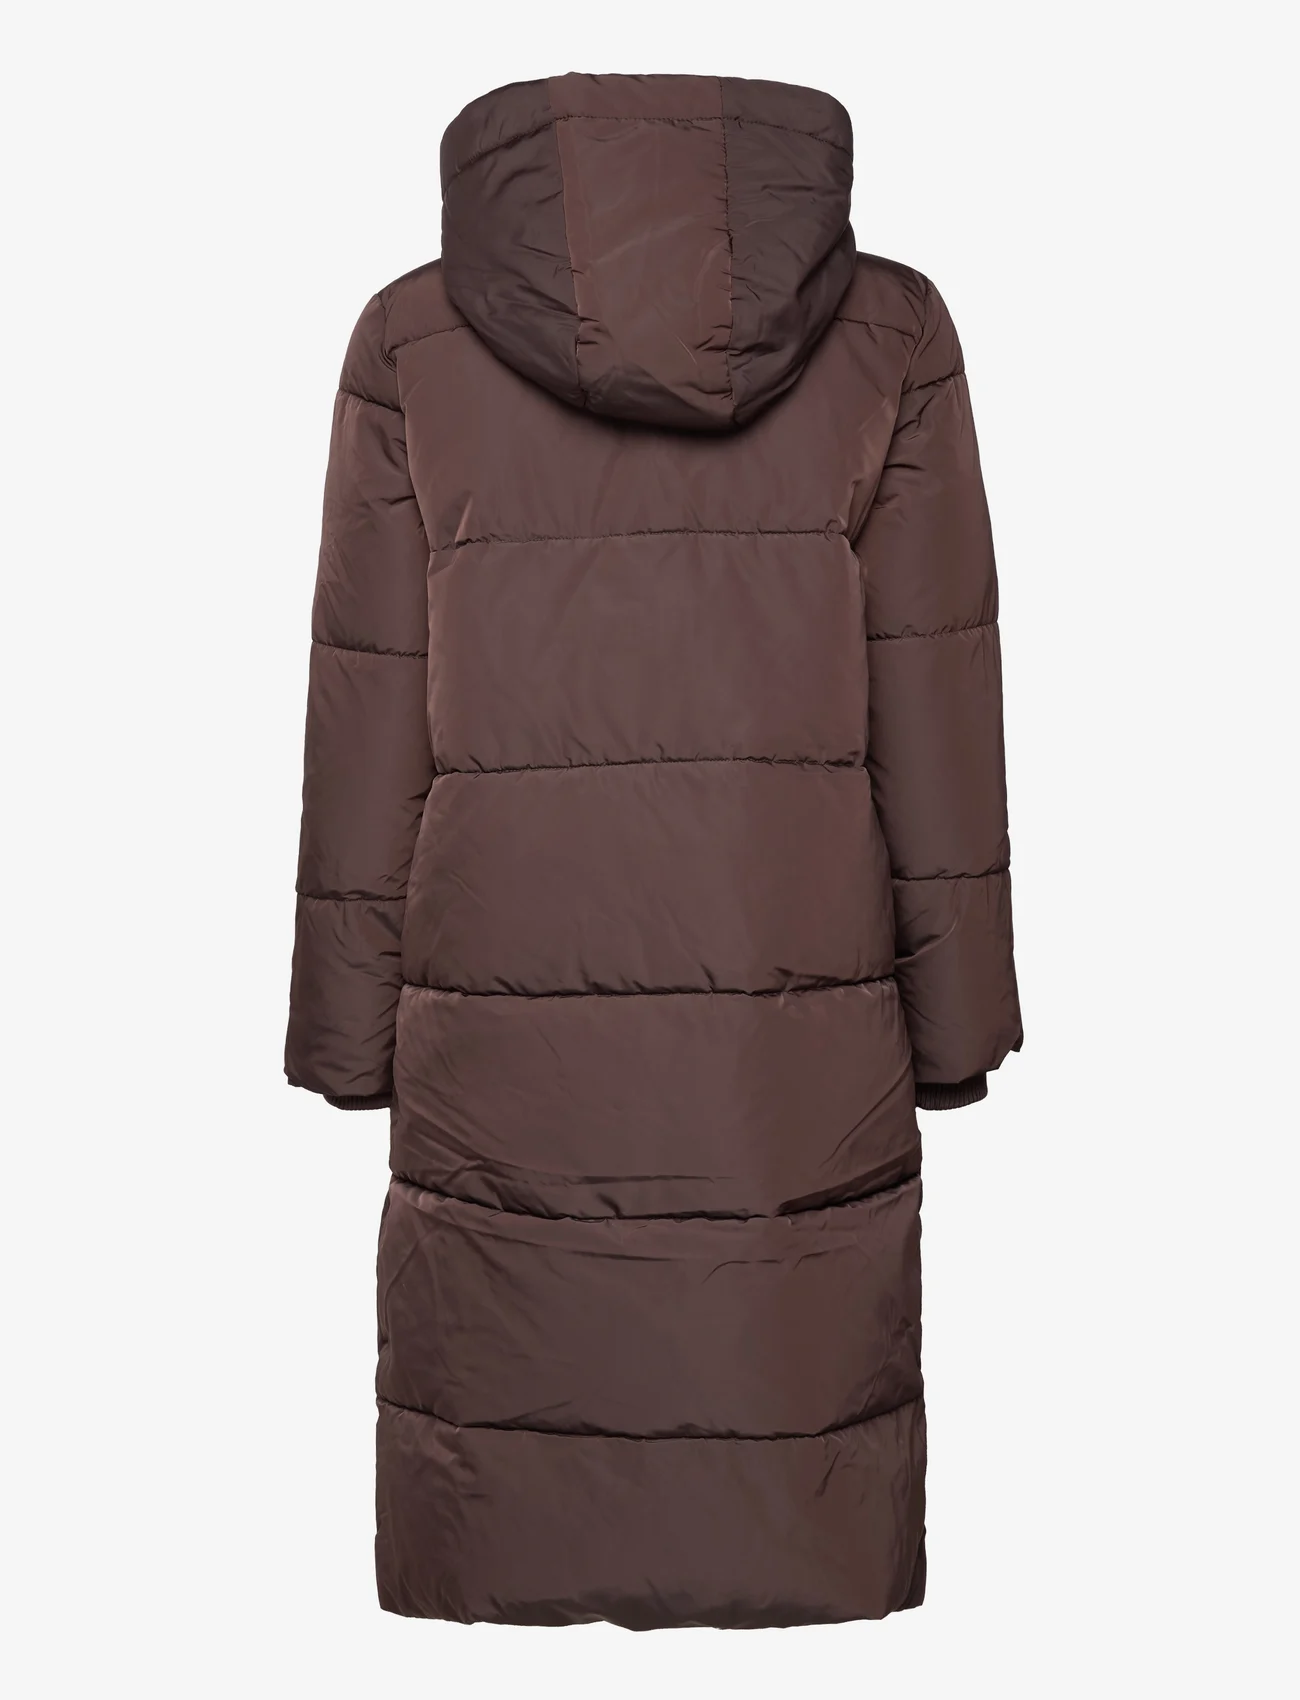 Coster Copenhagen - Puffer jacket - vinterjackor - dark brown - 1